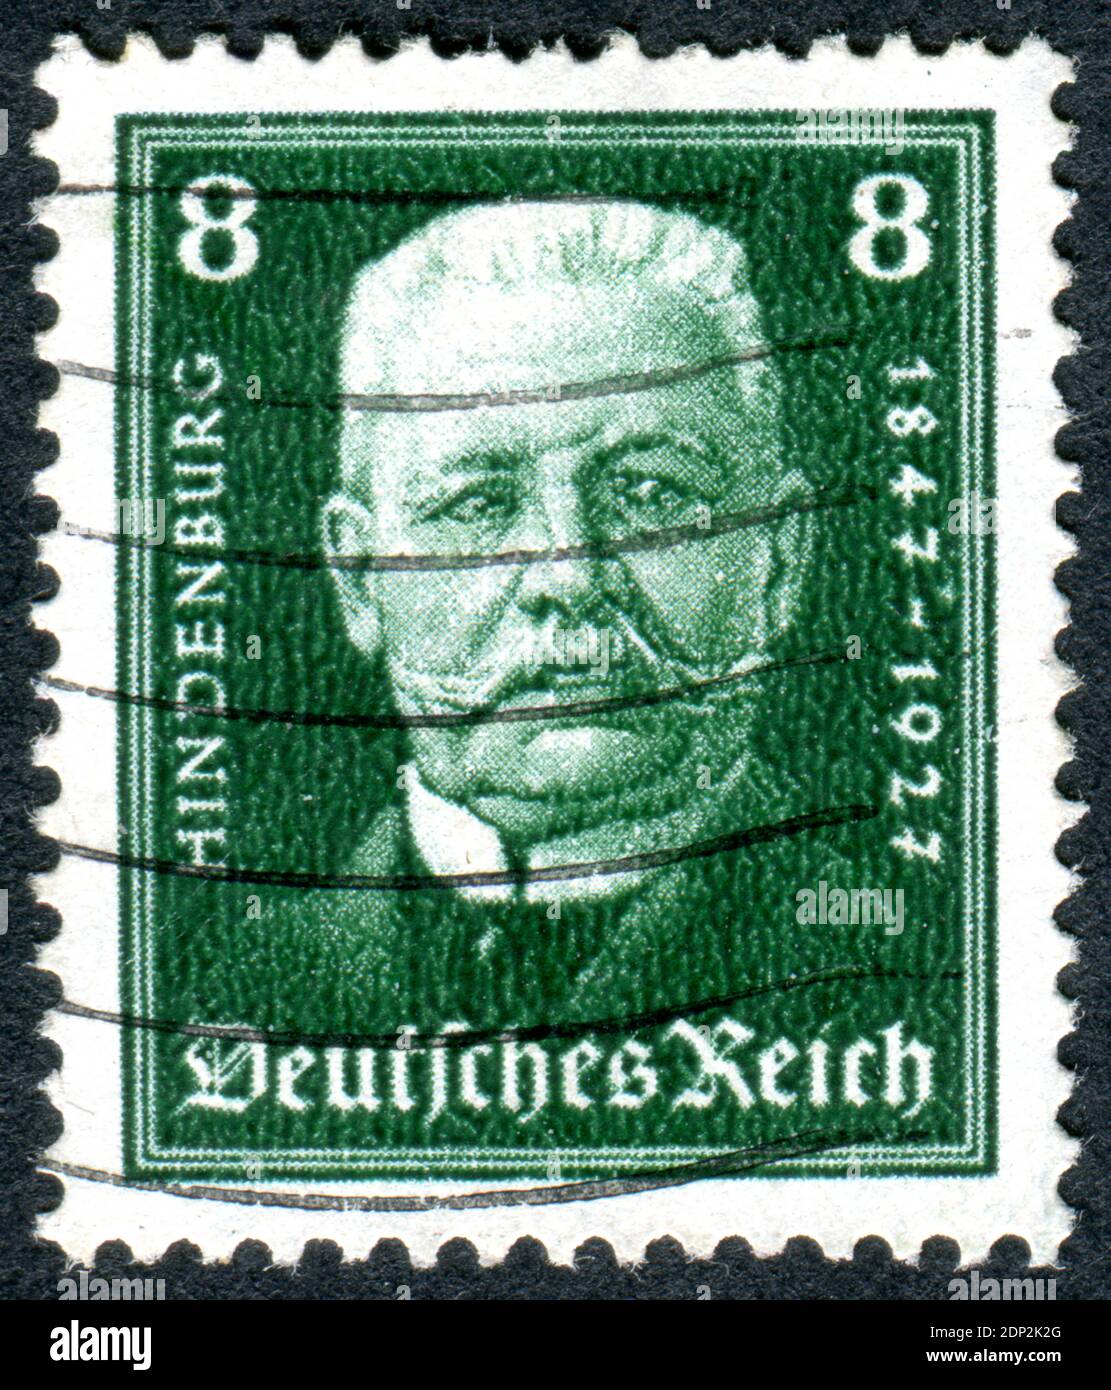 DEUTSCHLAND - UM 1928: Eine in Deutschland (Deutsches Reich) gedruckte Briefmarke zeigt ein Porträt des Reichspräsidenten Paul von Hindenburg, um 1928 Stockfoto